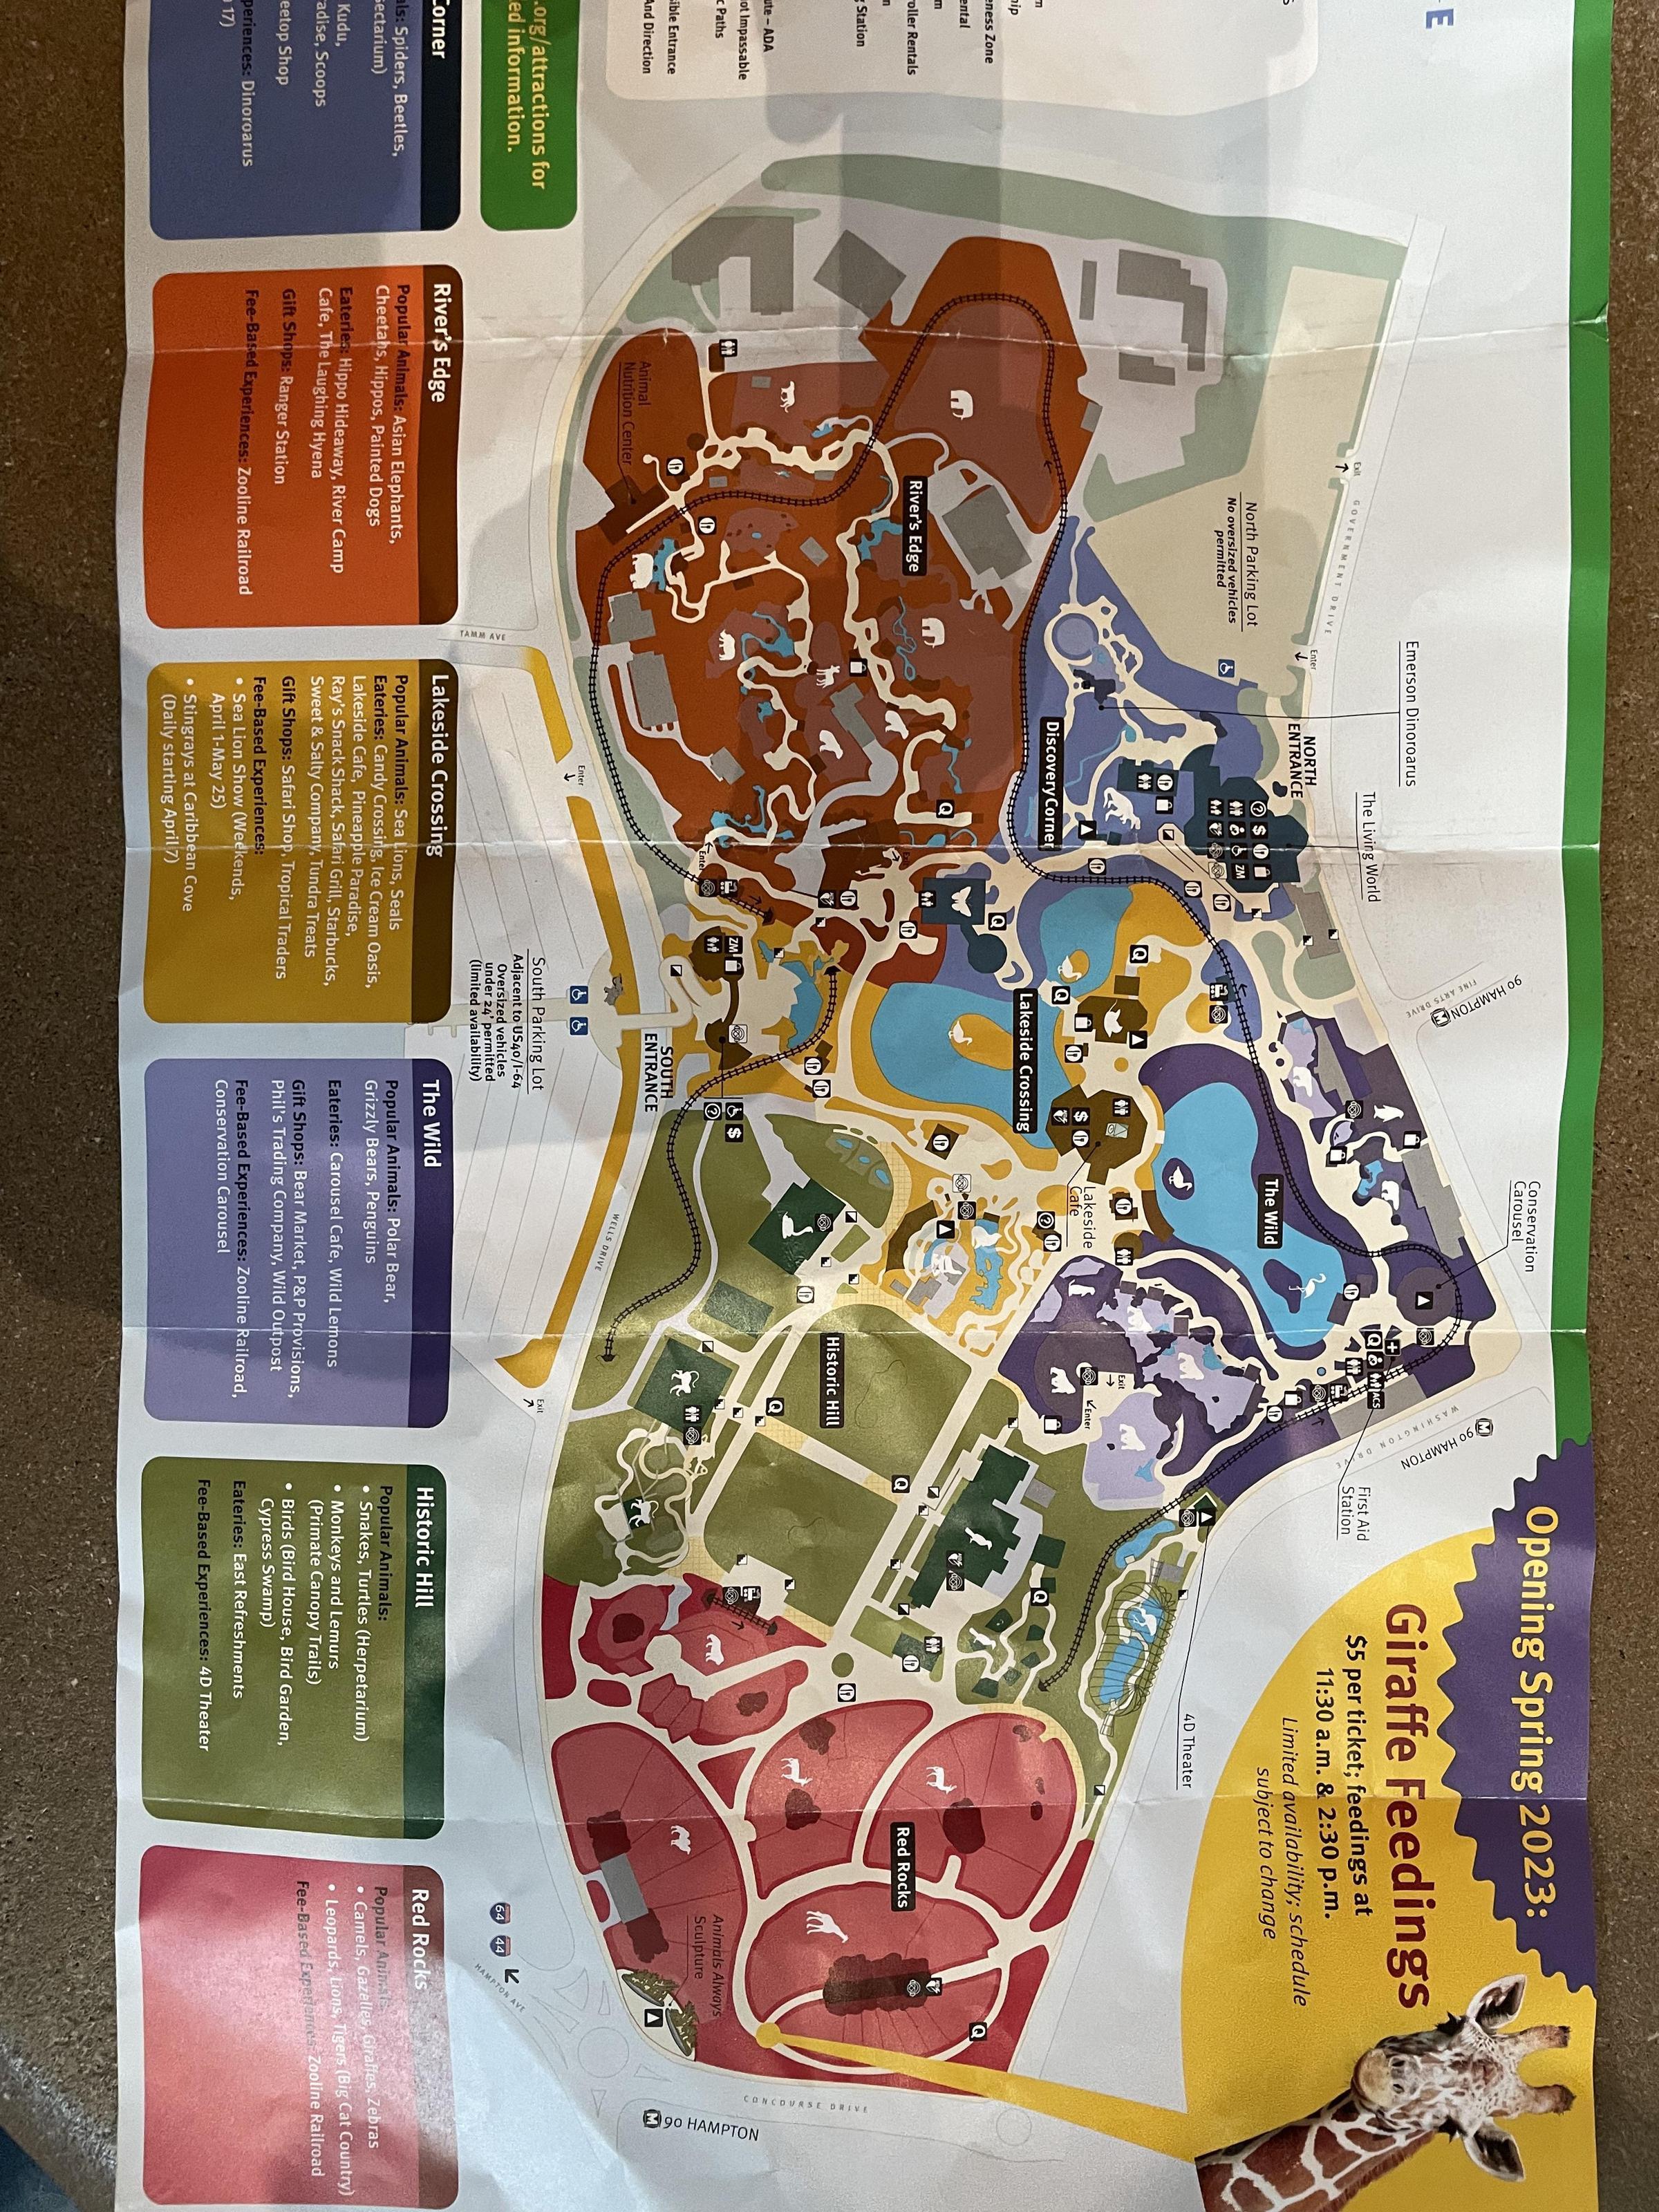 Saint Louis Zoo map